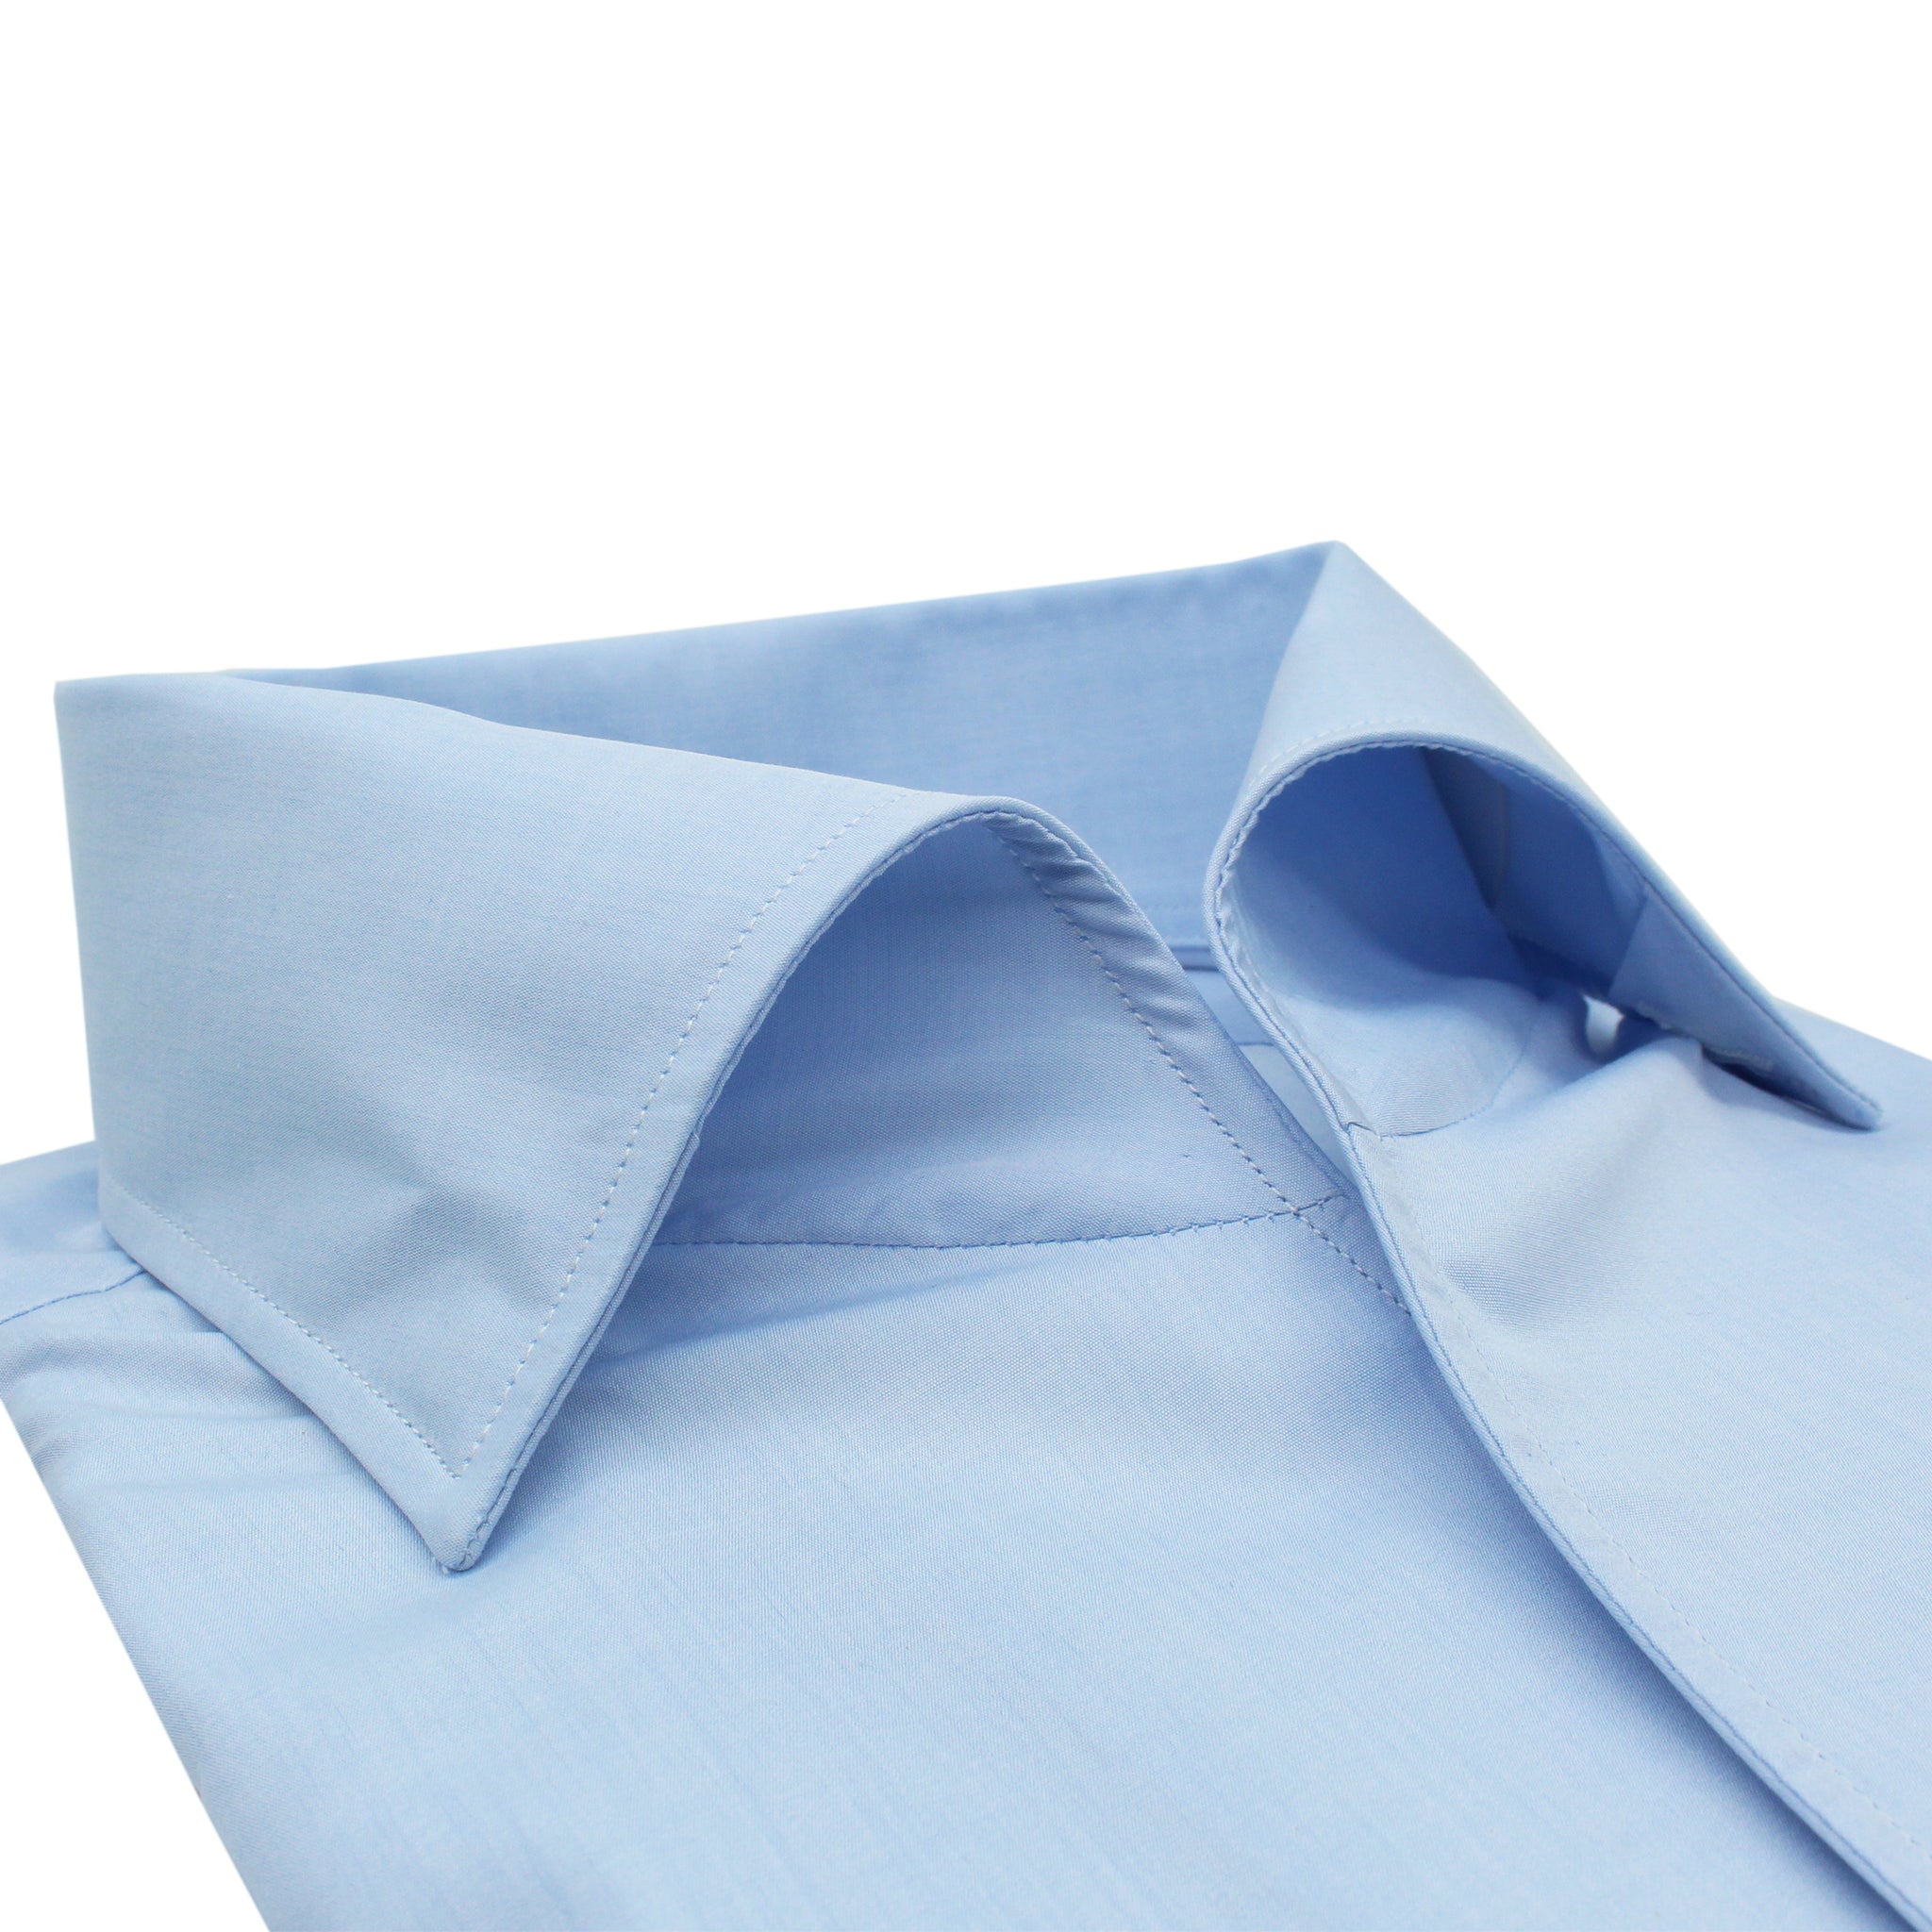 Classic Napoli 170 a Due cotton shirt in Giza 45 Ustica collar